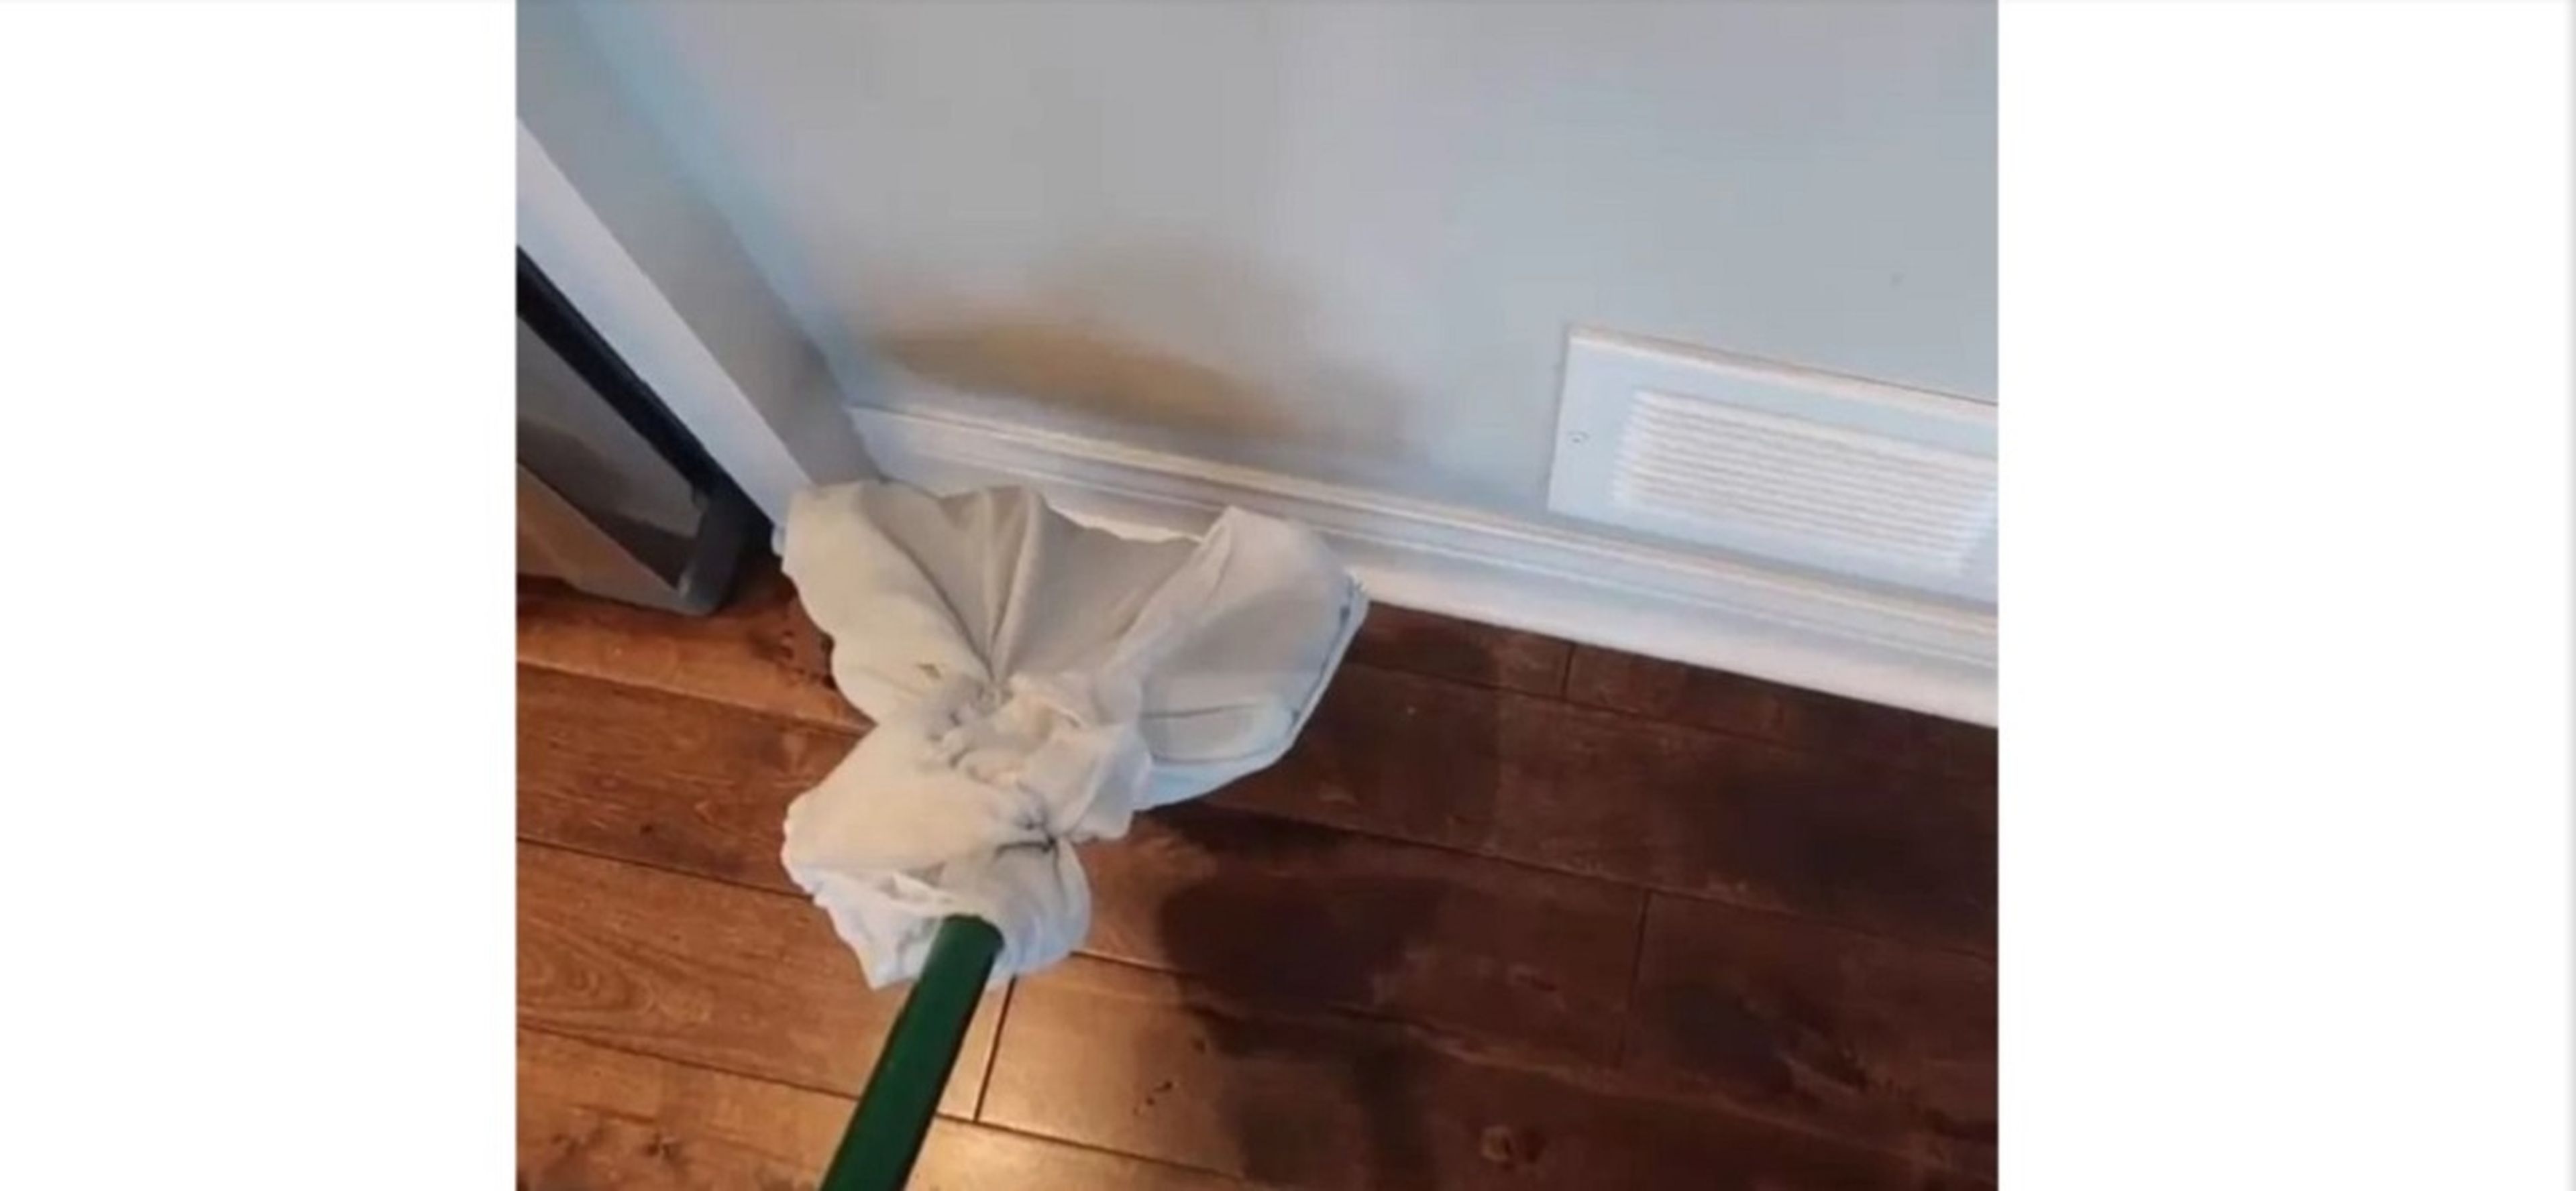 El truco viral de una madre para evitar que los muebles se llenen de polvo